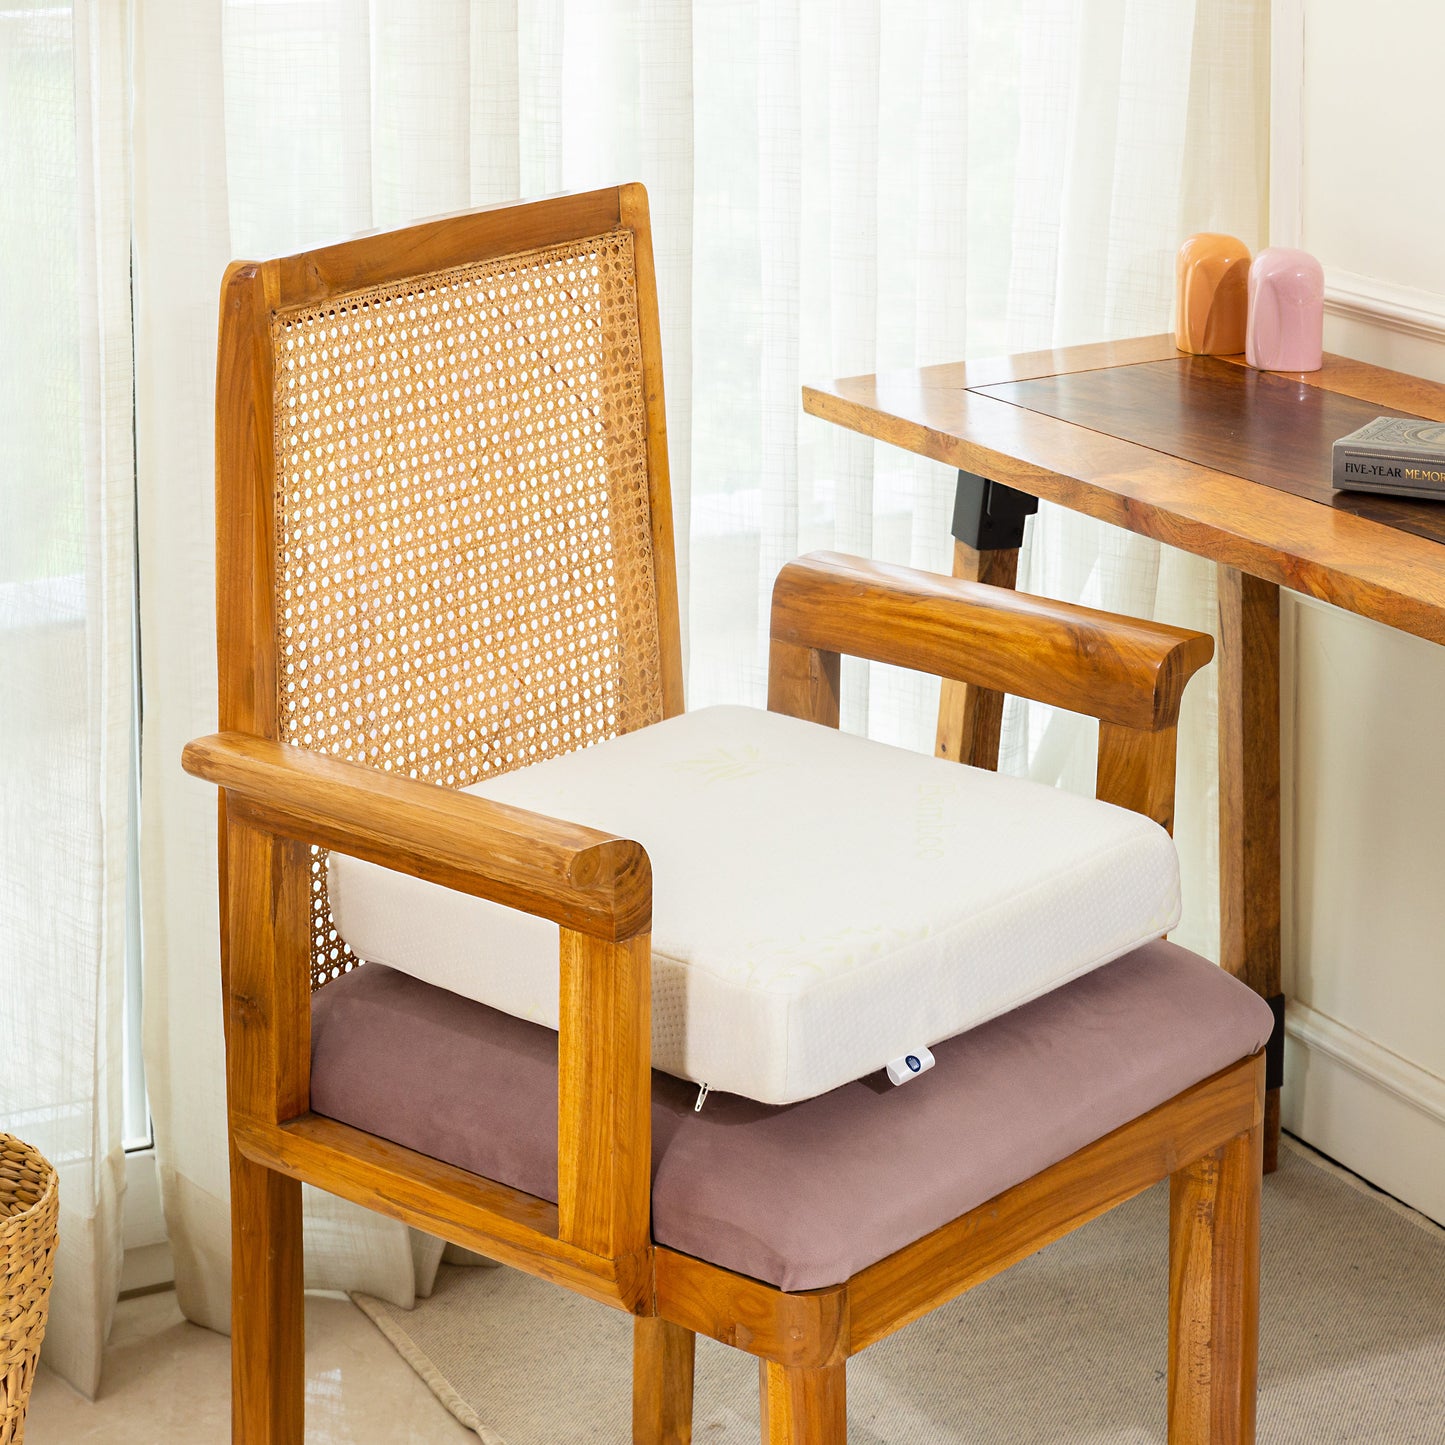 Caladium - Cooling Gel Memory Foam Indoor Chair Seat Cushion - Medium Firm